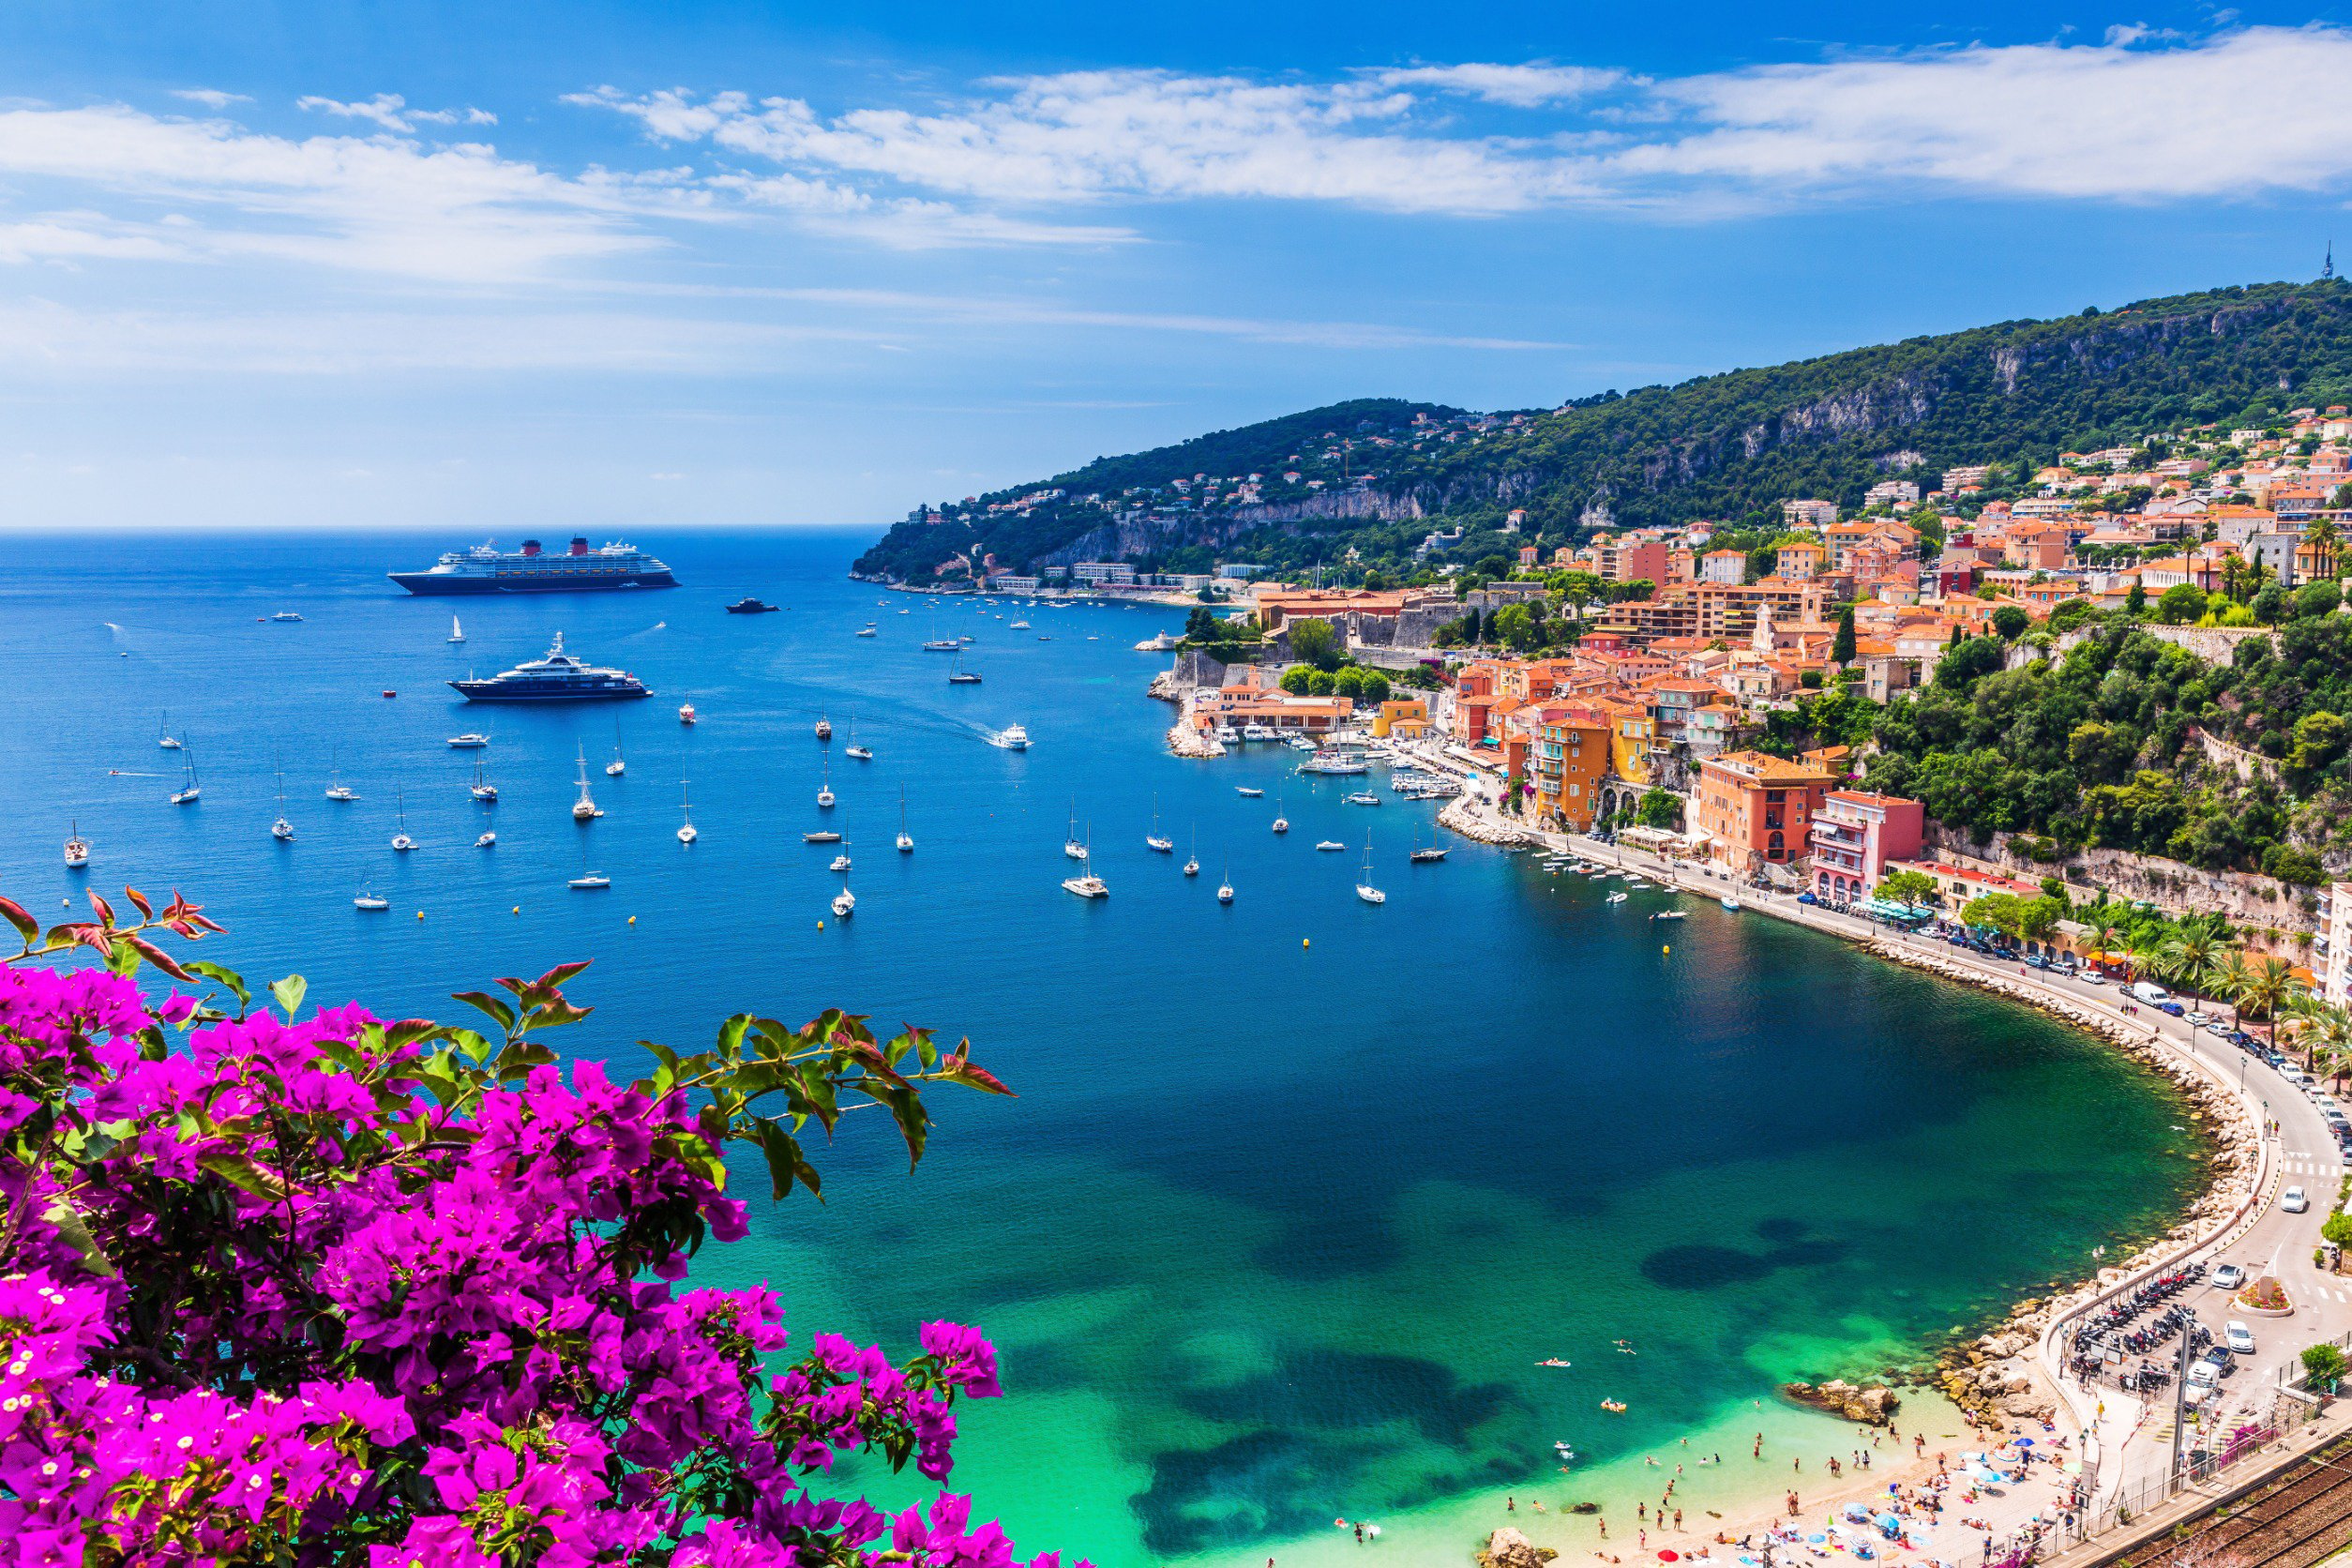 Resa till Franska Rivieran - Bukt med blått hav och båter, grönska och stenstrand runt omkring